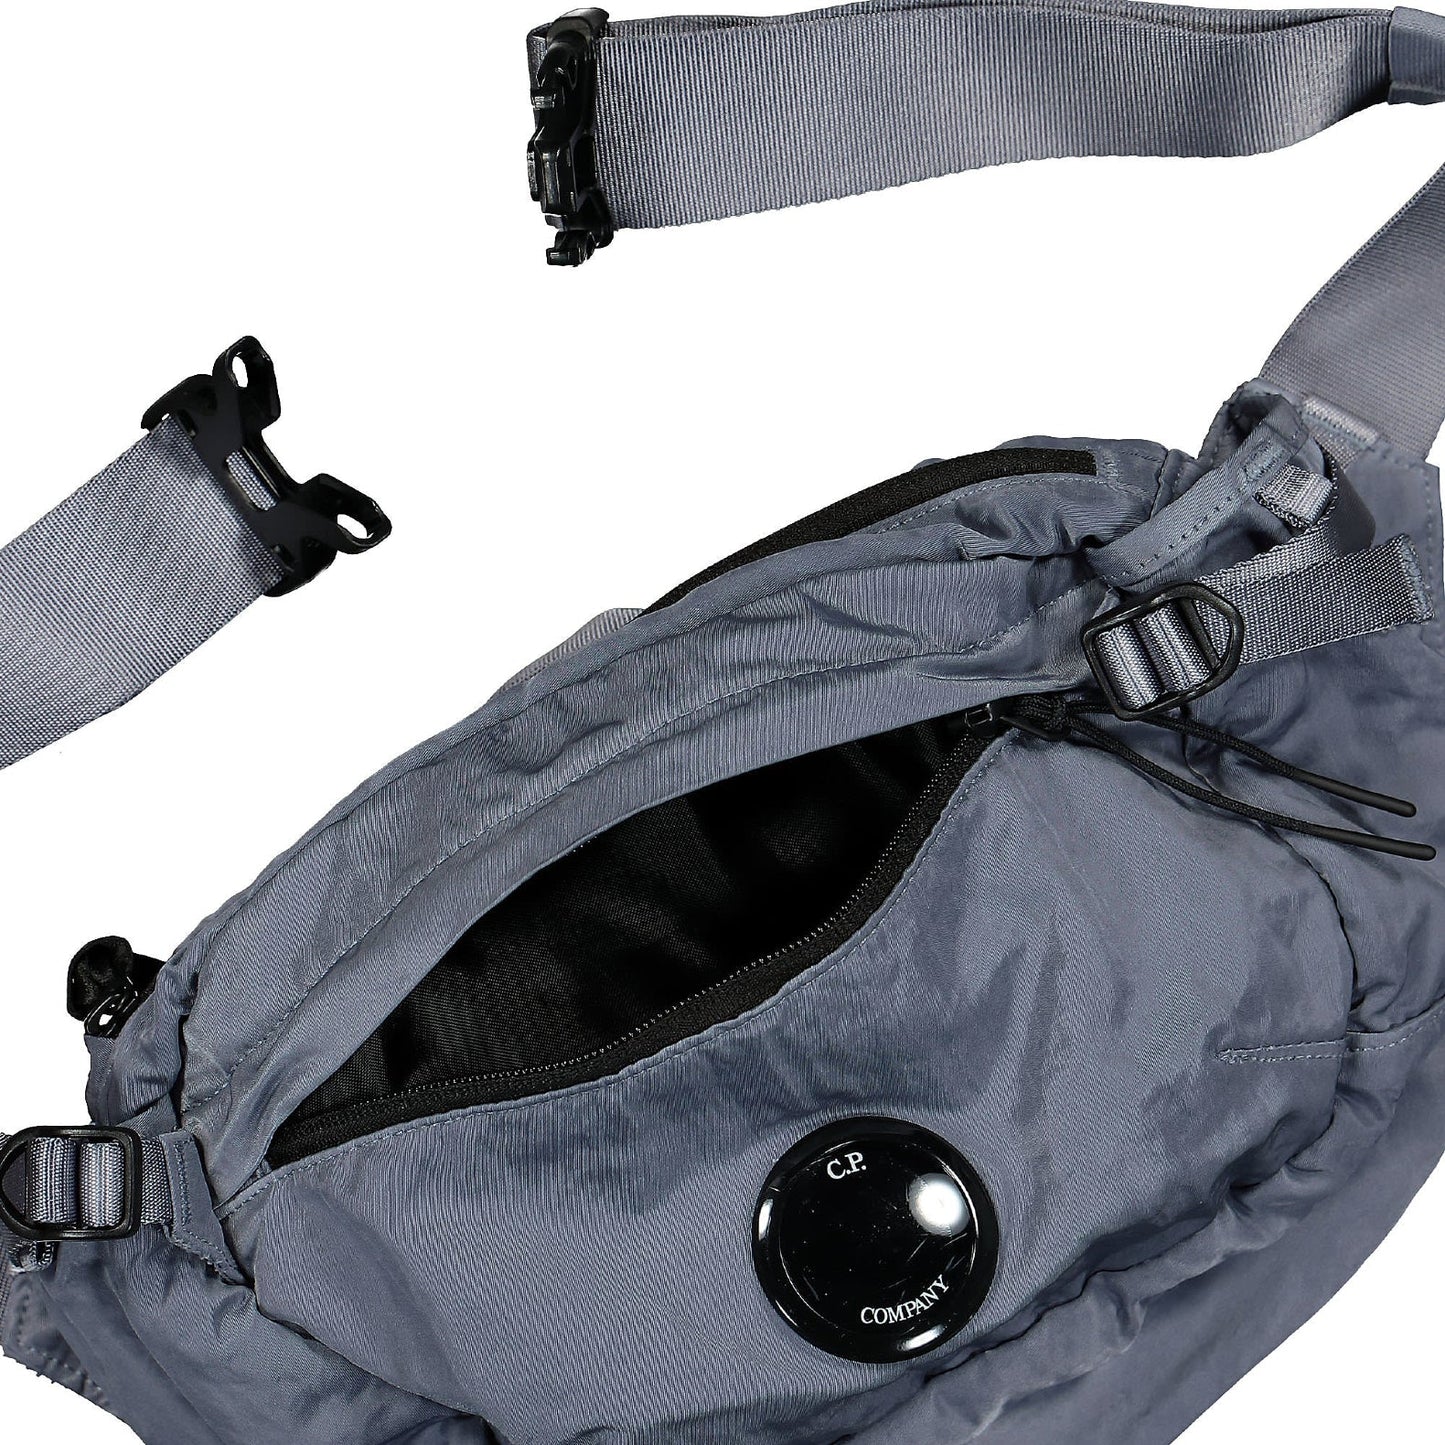 CP Company Nylon B Cross Body Bag - 843 Infty Blu - Escape Menswear